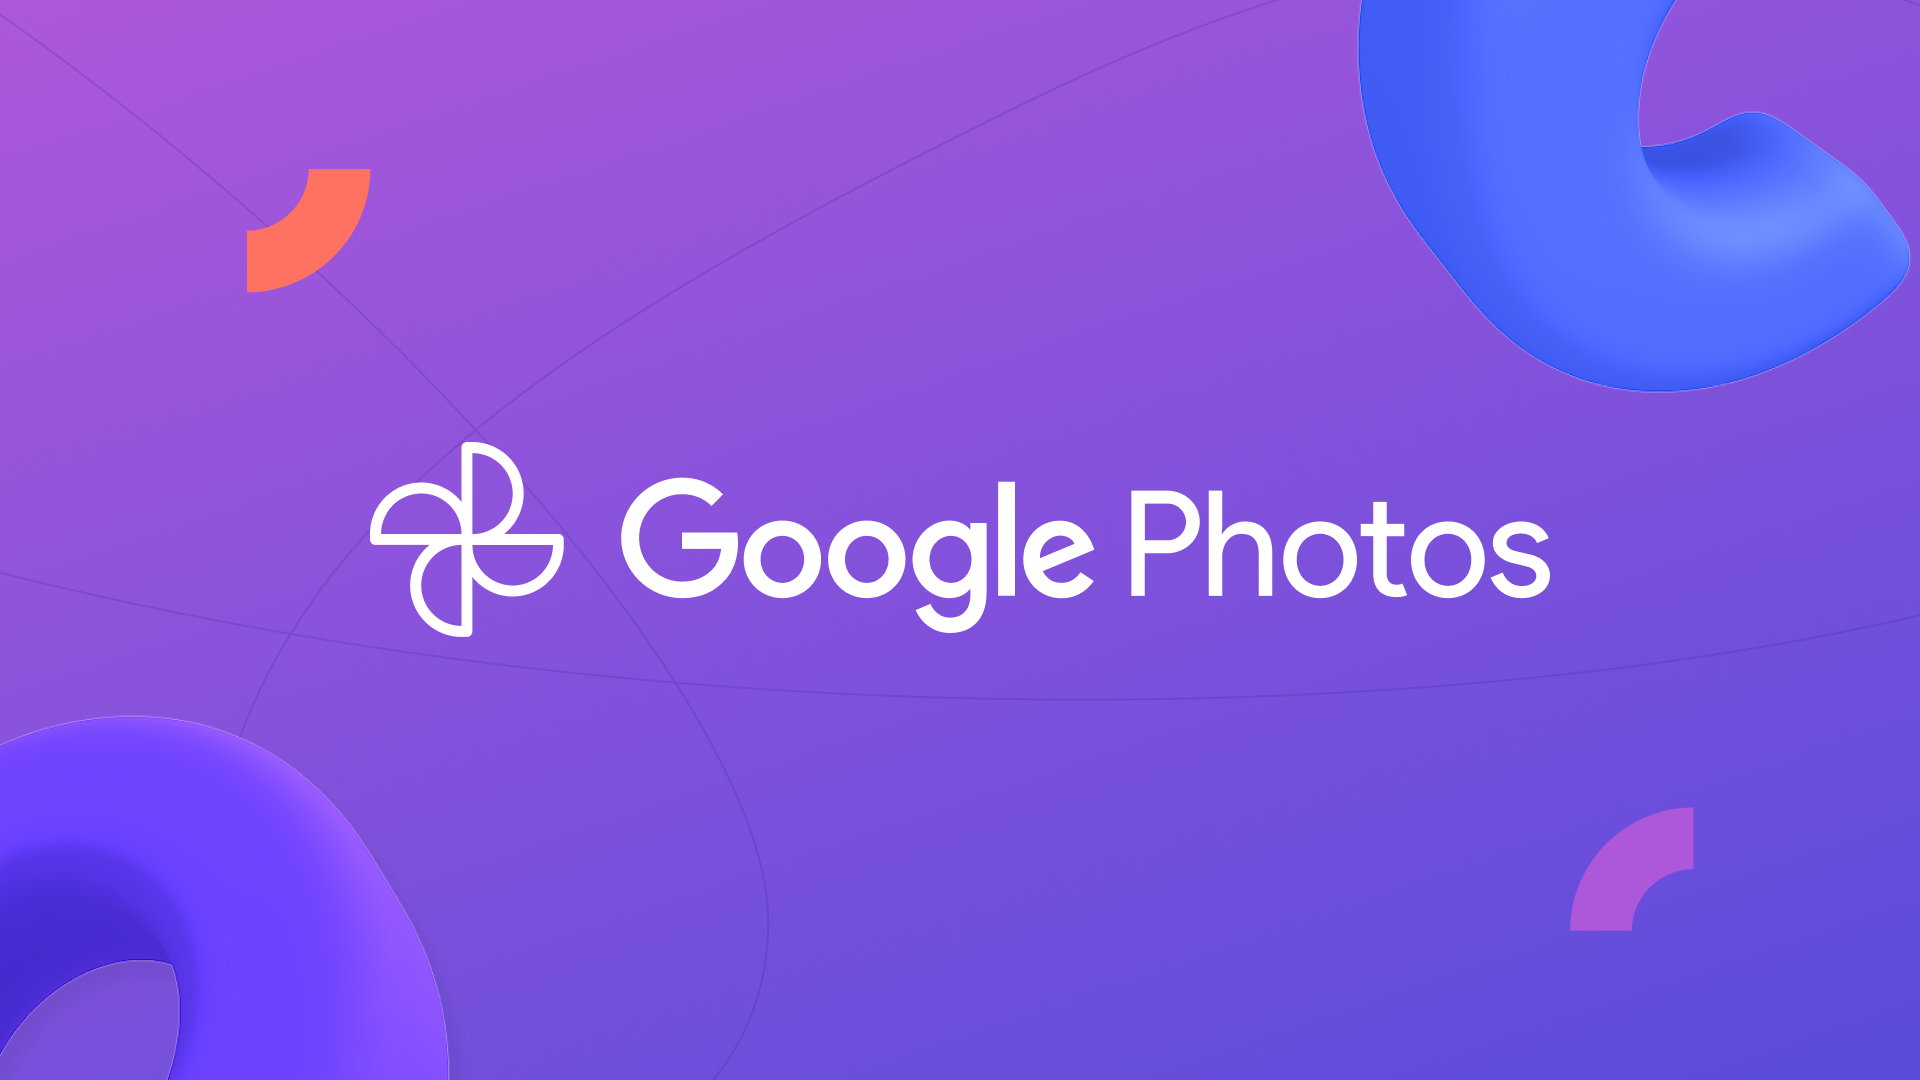 Título do post sobre integração com o Google Fotos